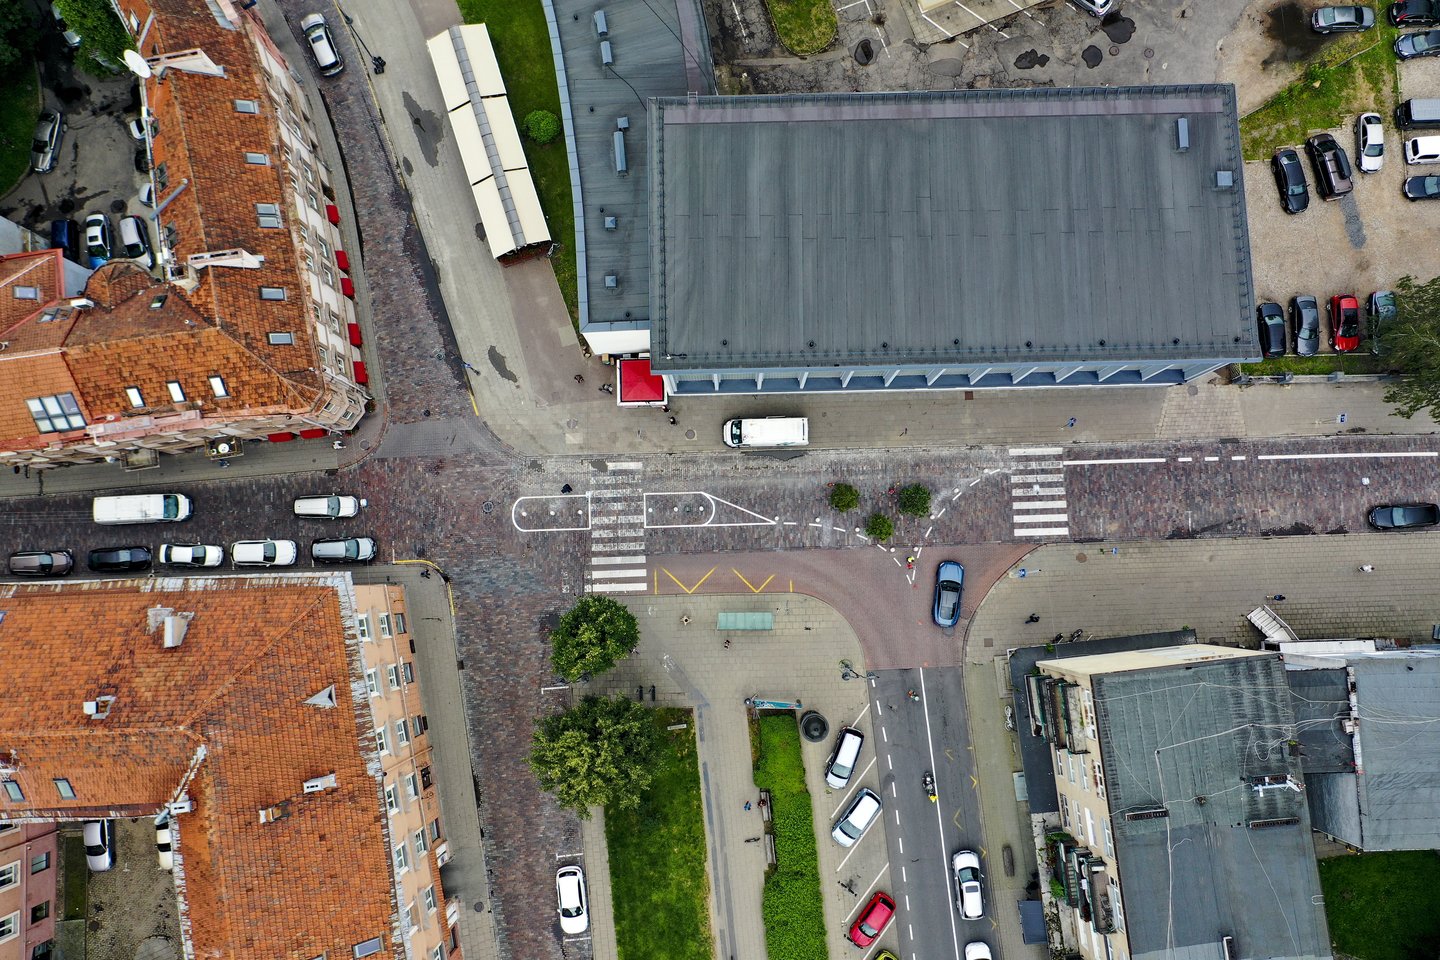 Nors savivaldybės atstovai tikino, kad kilpinis eismas labai veiksmingas, stulpelių nebeliko nei Vokiečių gatvės pradžioje, nei Rotušės aikštėje.<br>V.Ščiavinsko nuotr.